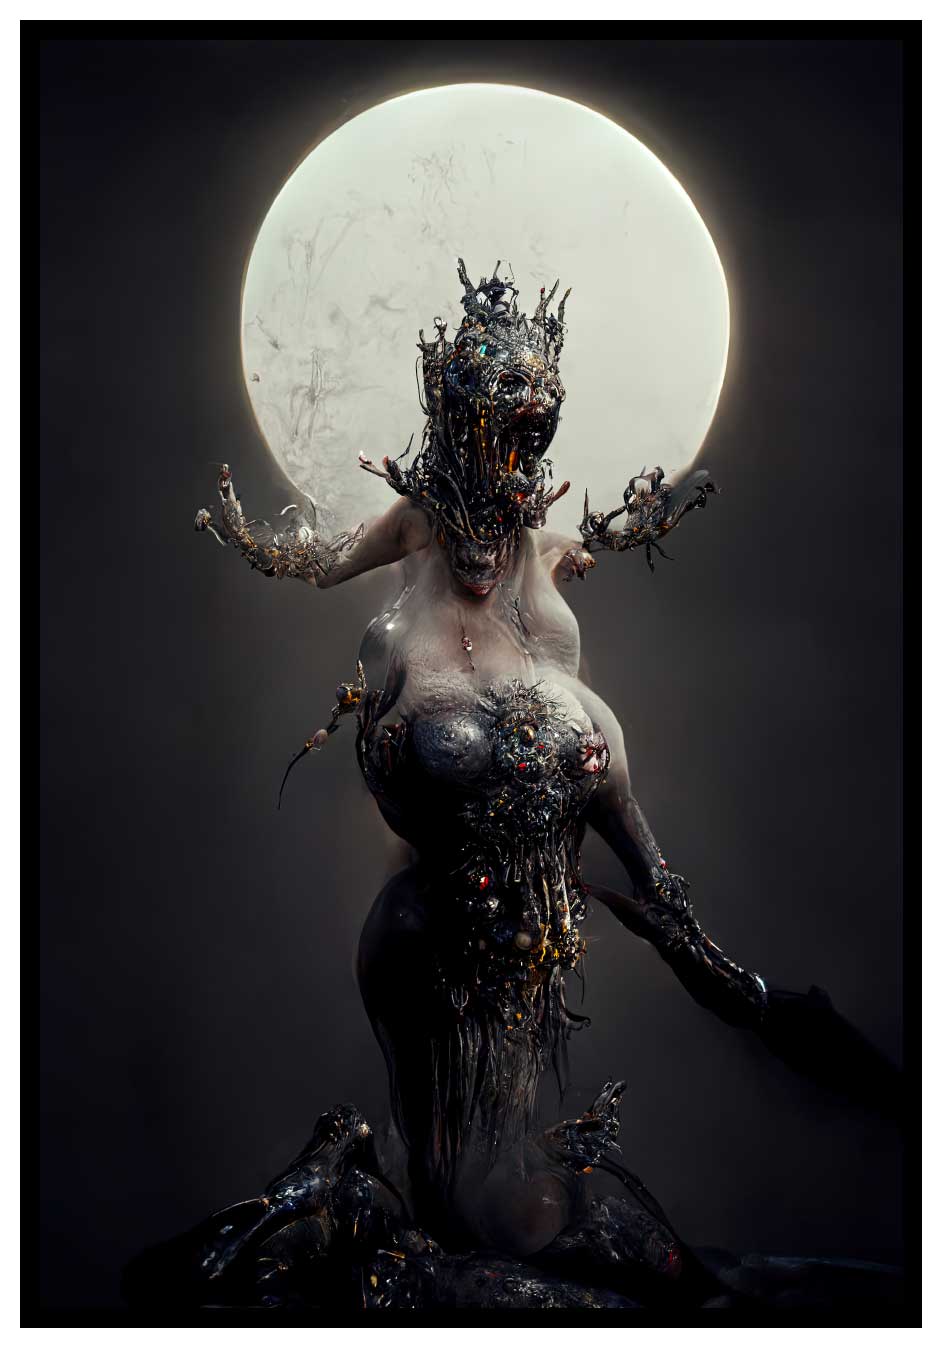 Donna dello spazio esterno - Poster di arte oscura